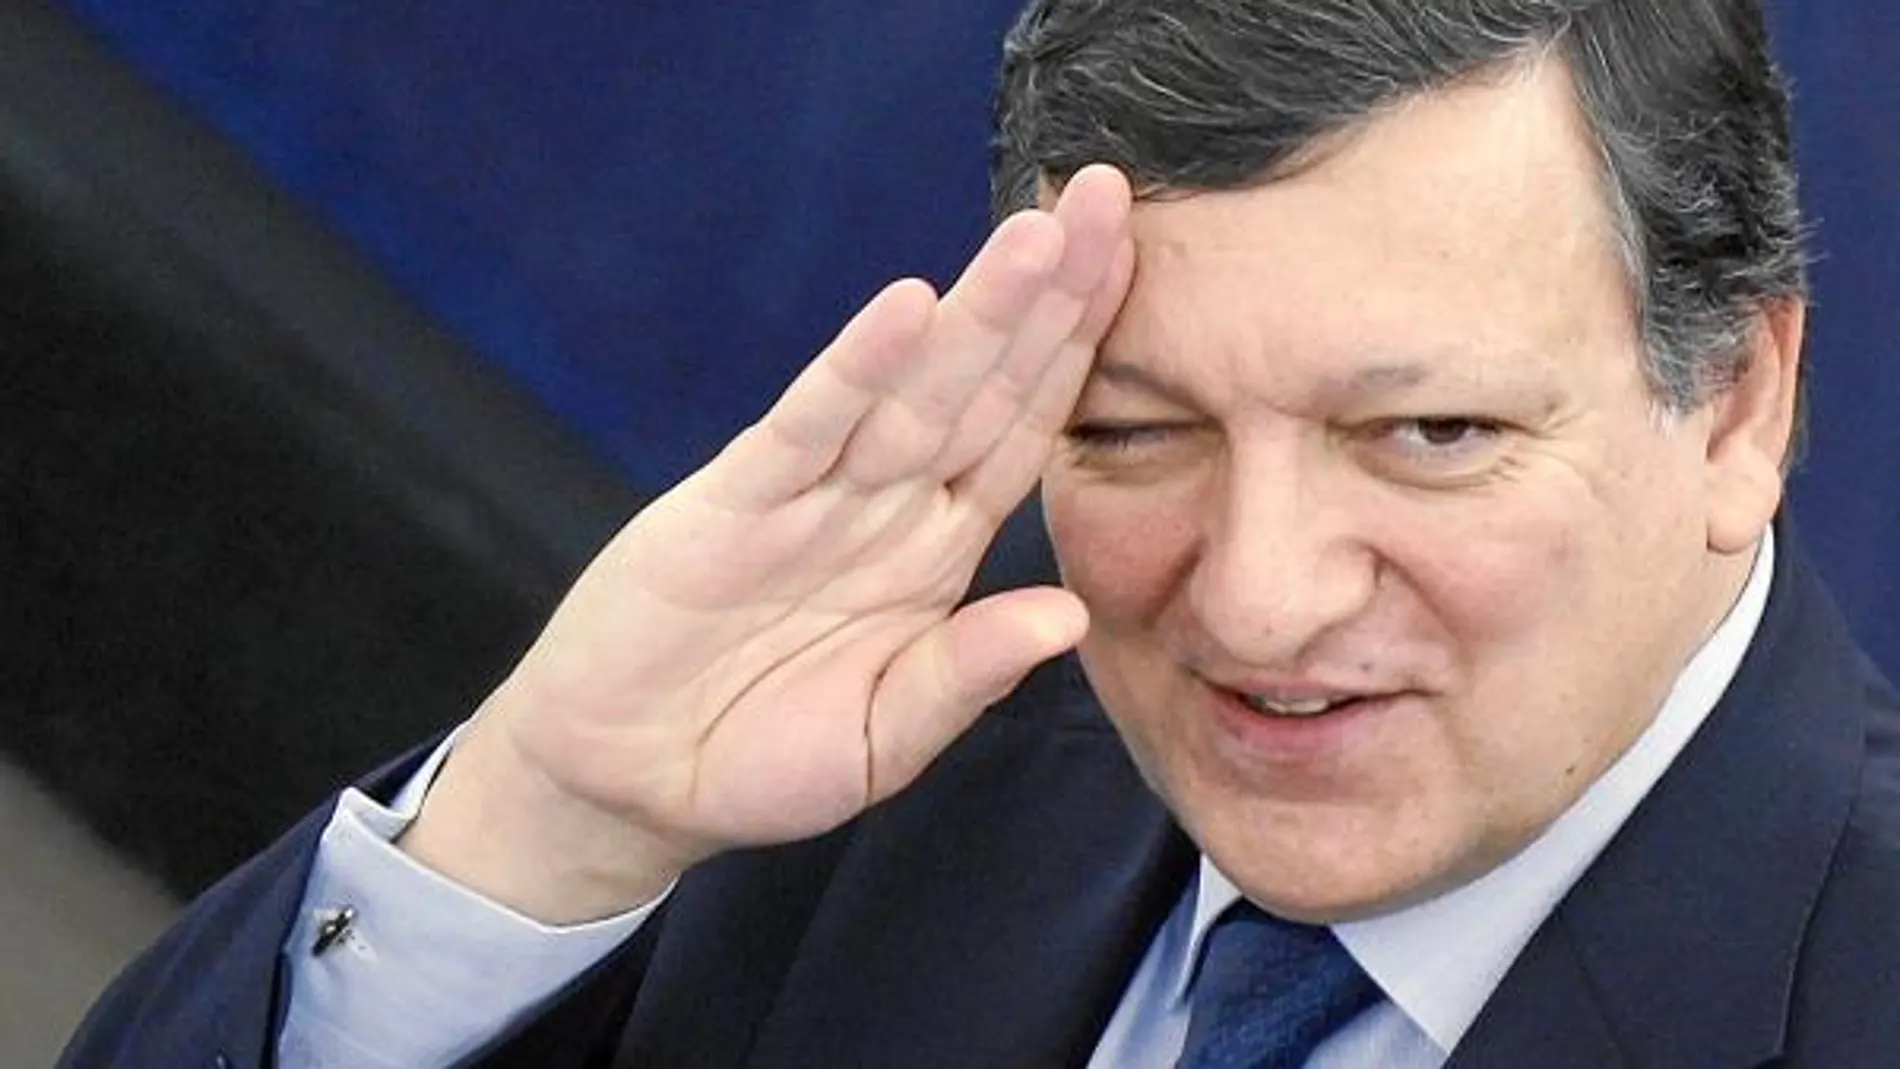 La Comisión Europea que preside Durao Barroso insistió ayer en pedir a Irlanda que suba sus impuestos y recorte el gasto